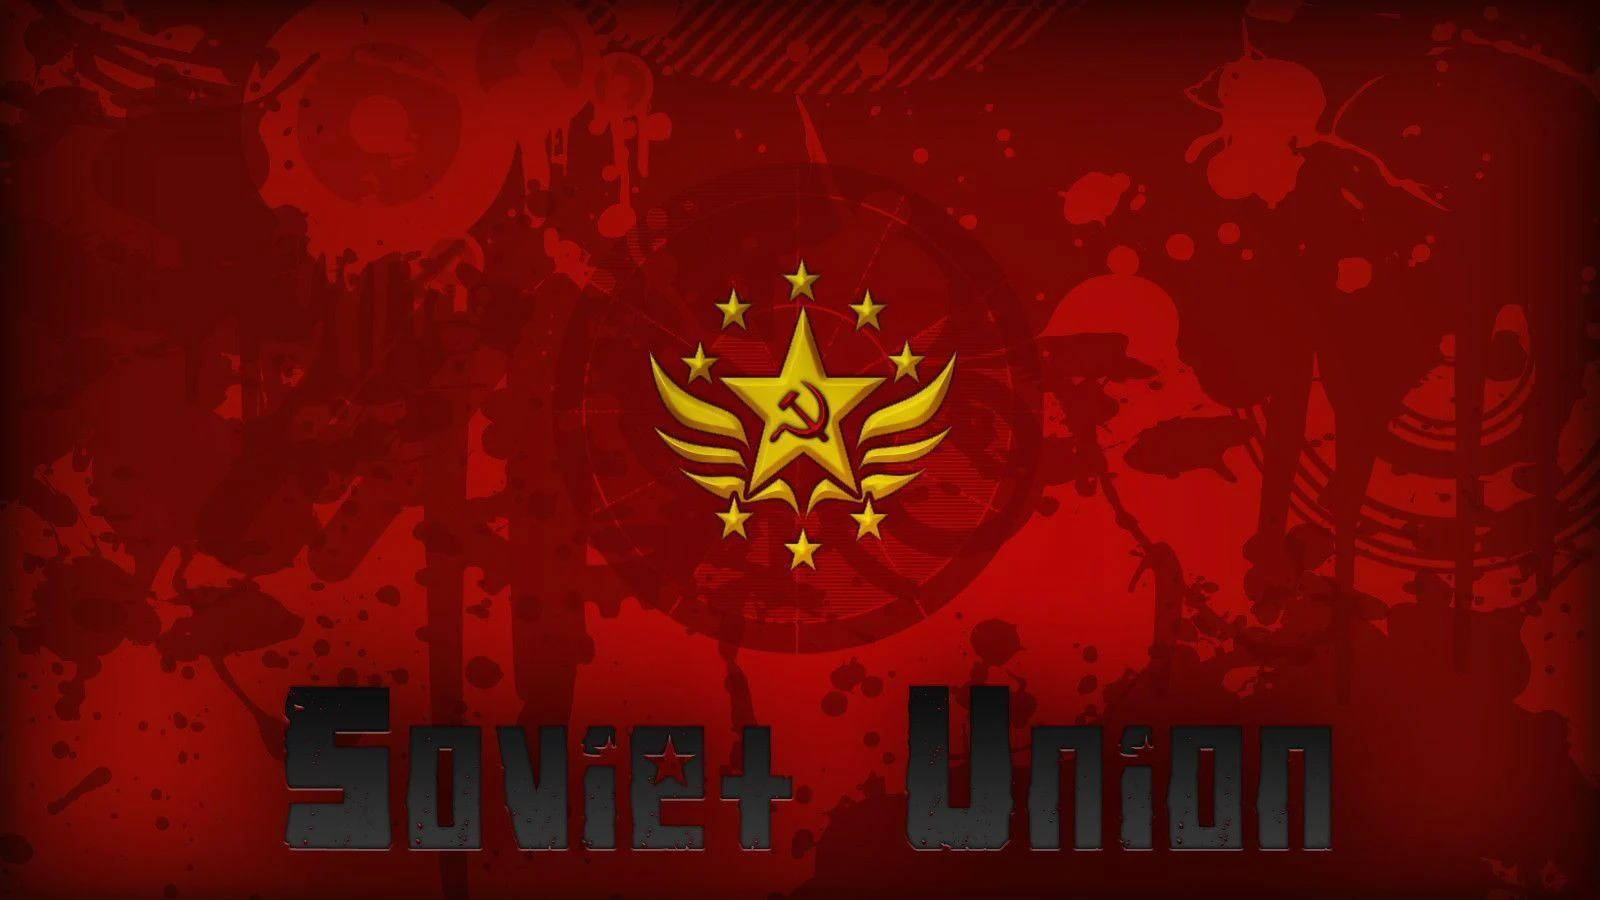 Sovjetunionensflaggalogotyp Med Stjärnor. Wallpaper